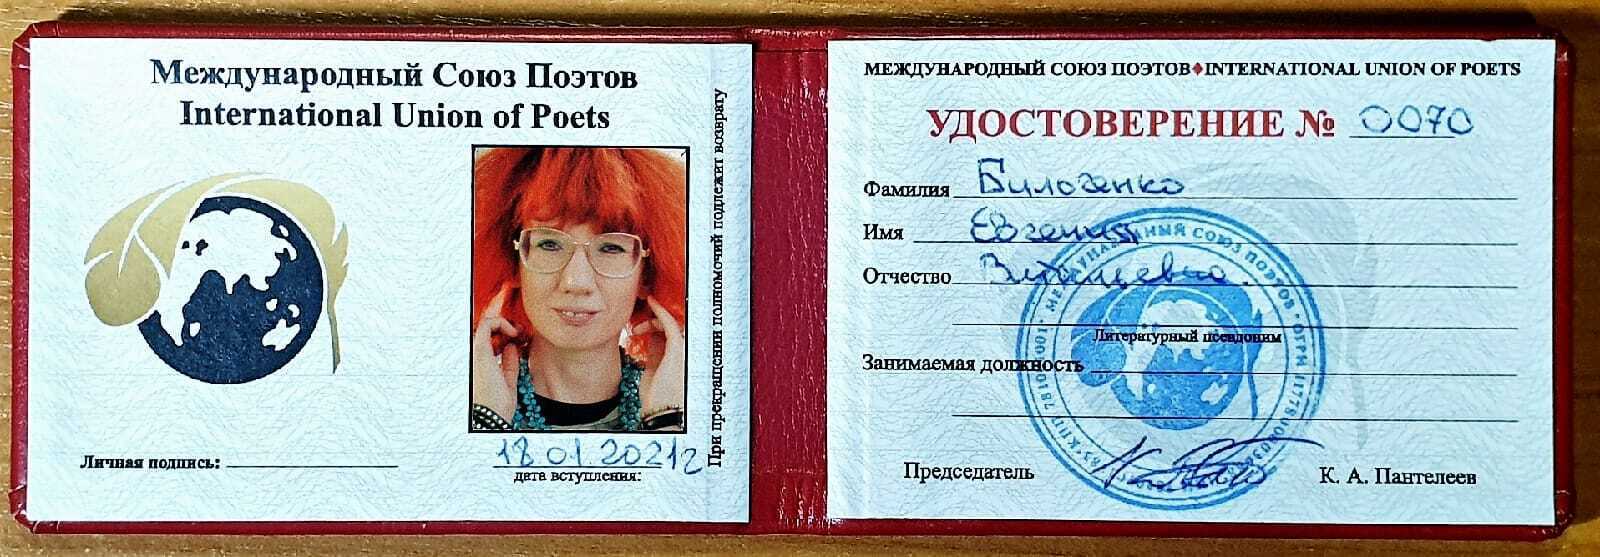 Удостоверение Бильченко, выданное в Санкт-Петербурге